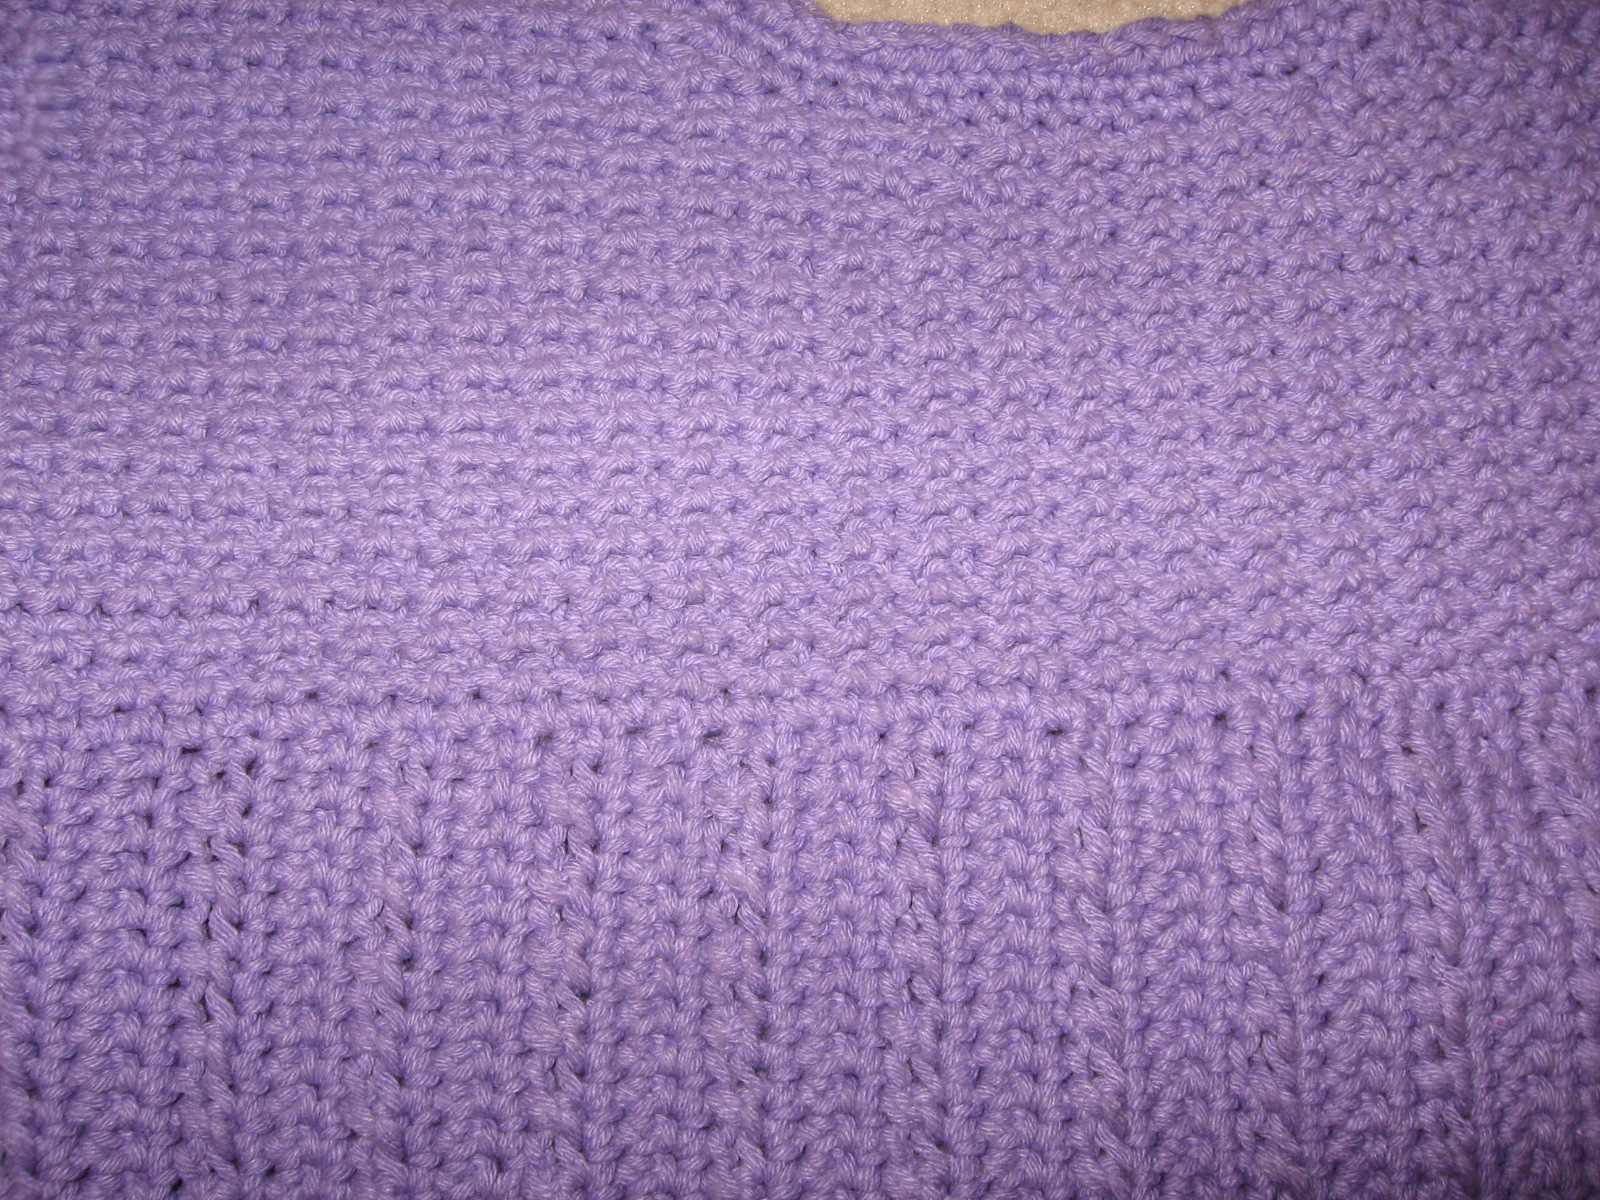 [My+Crochet+Work+003.jpg]